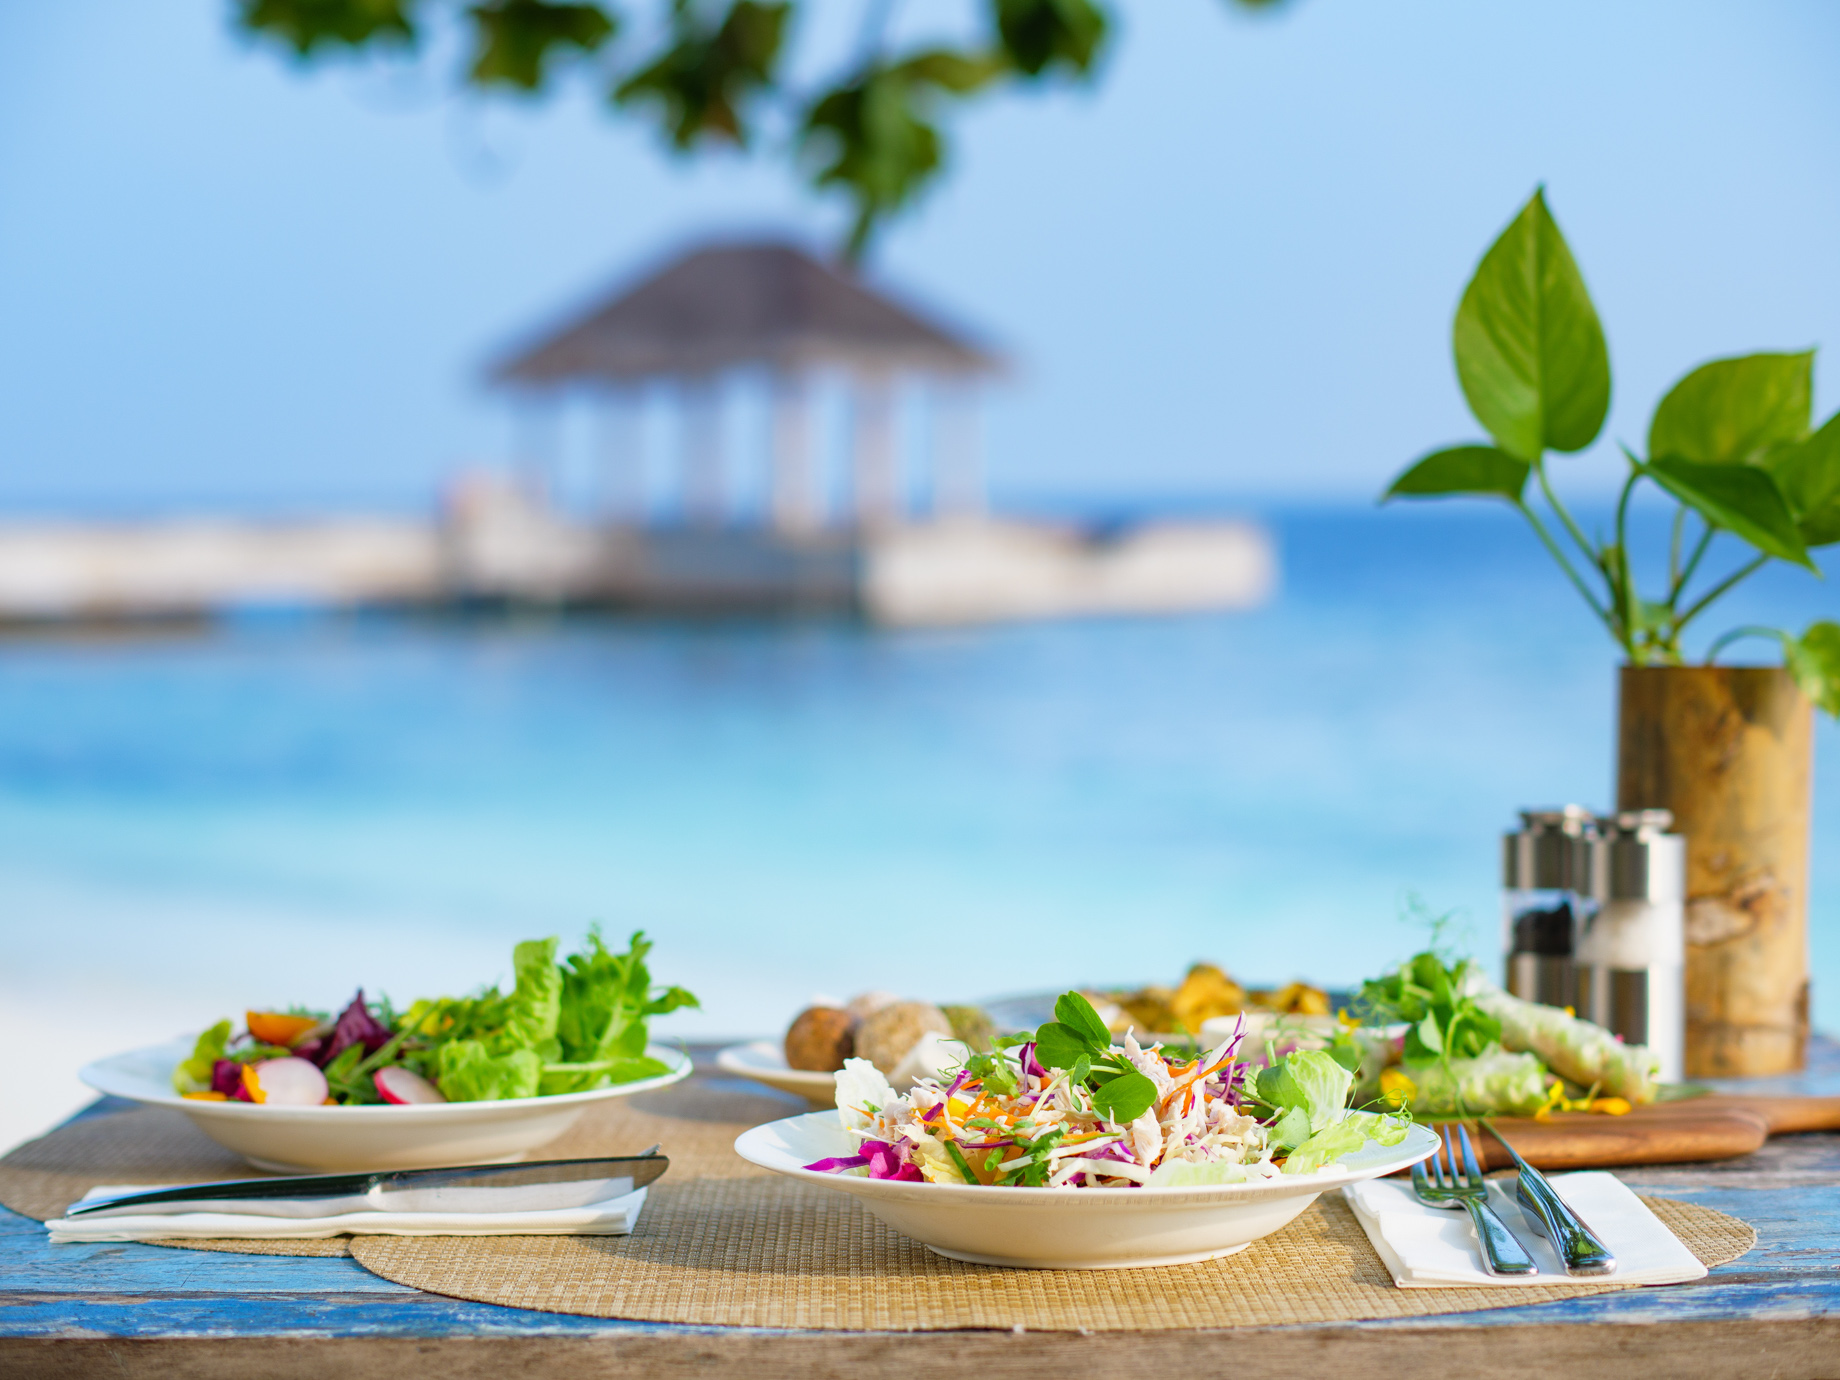 Amilla Fushi Resort and Residences - Baa Atoll, Maldives - Wellness Cafe Food